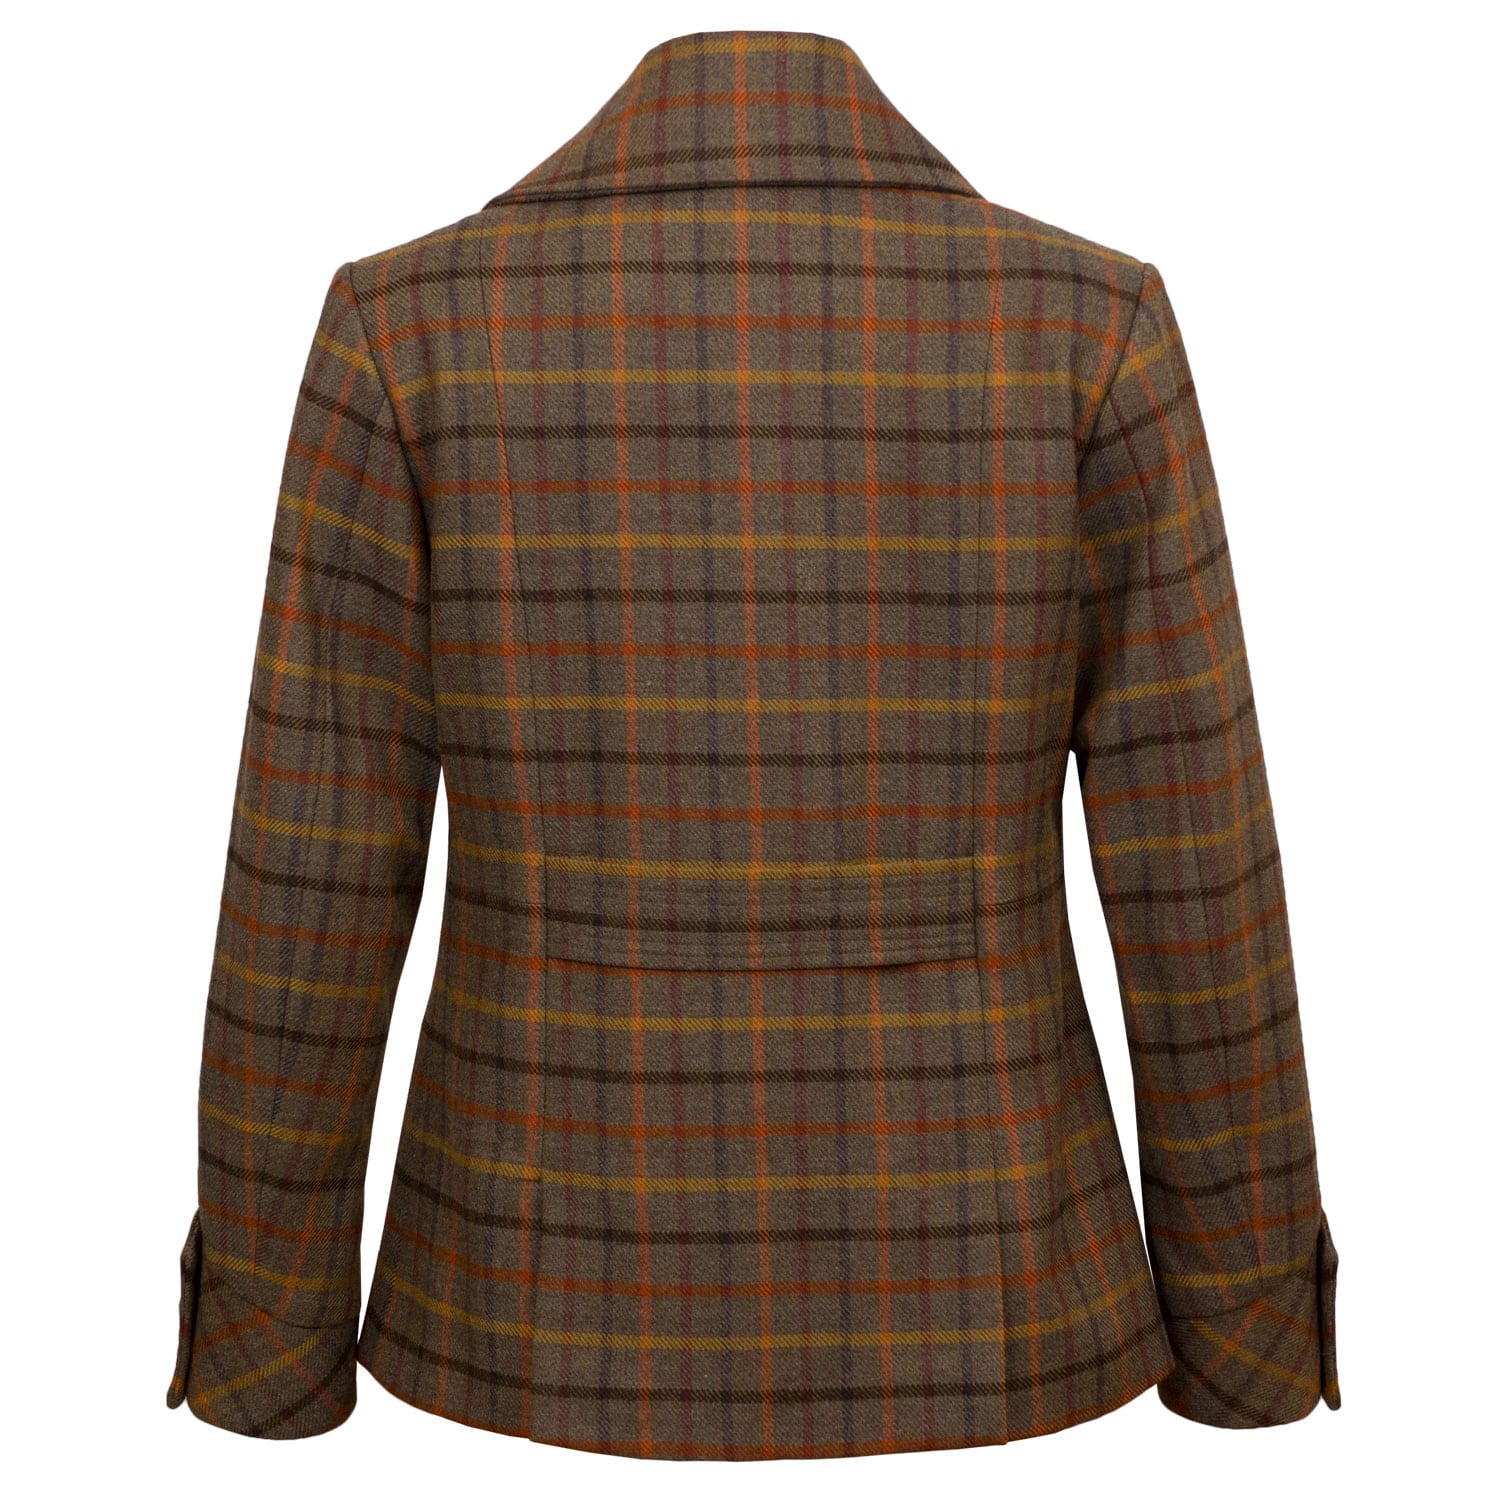 Oban: Women's Brown Tweed Jacket